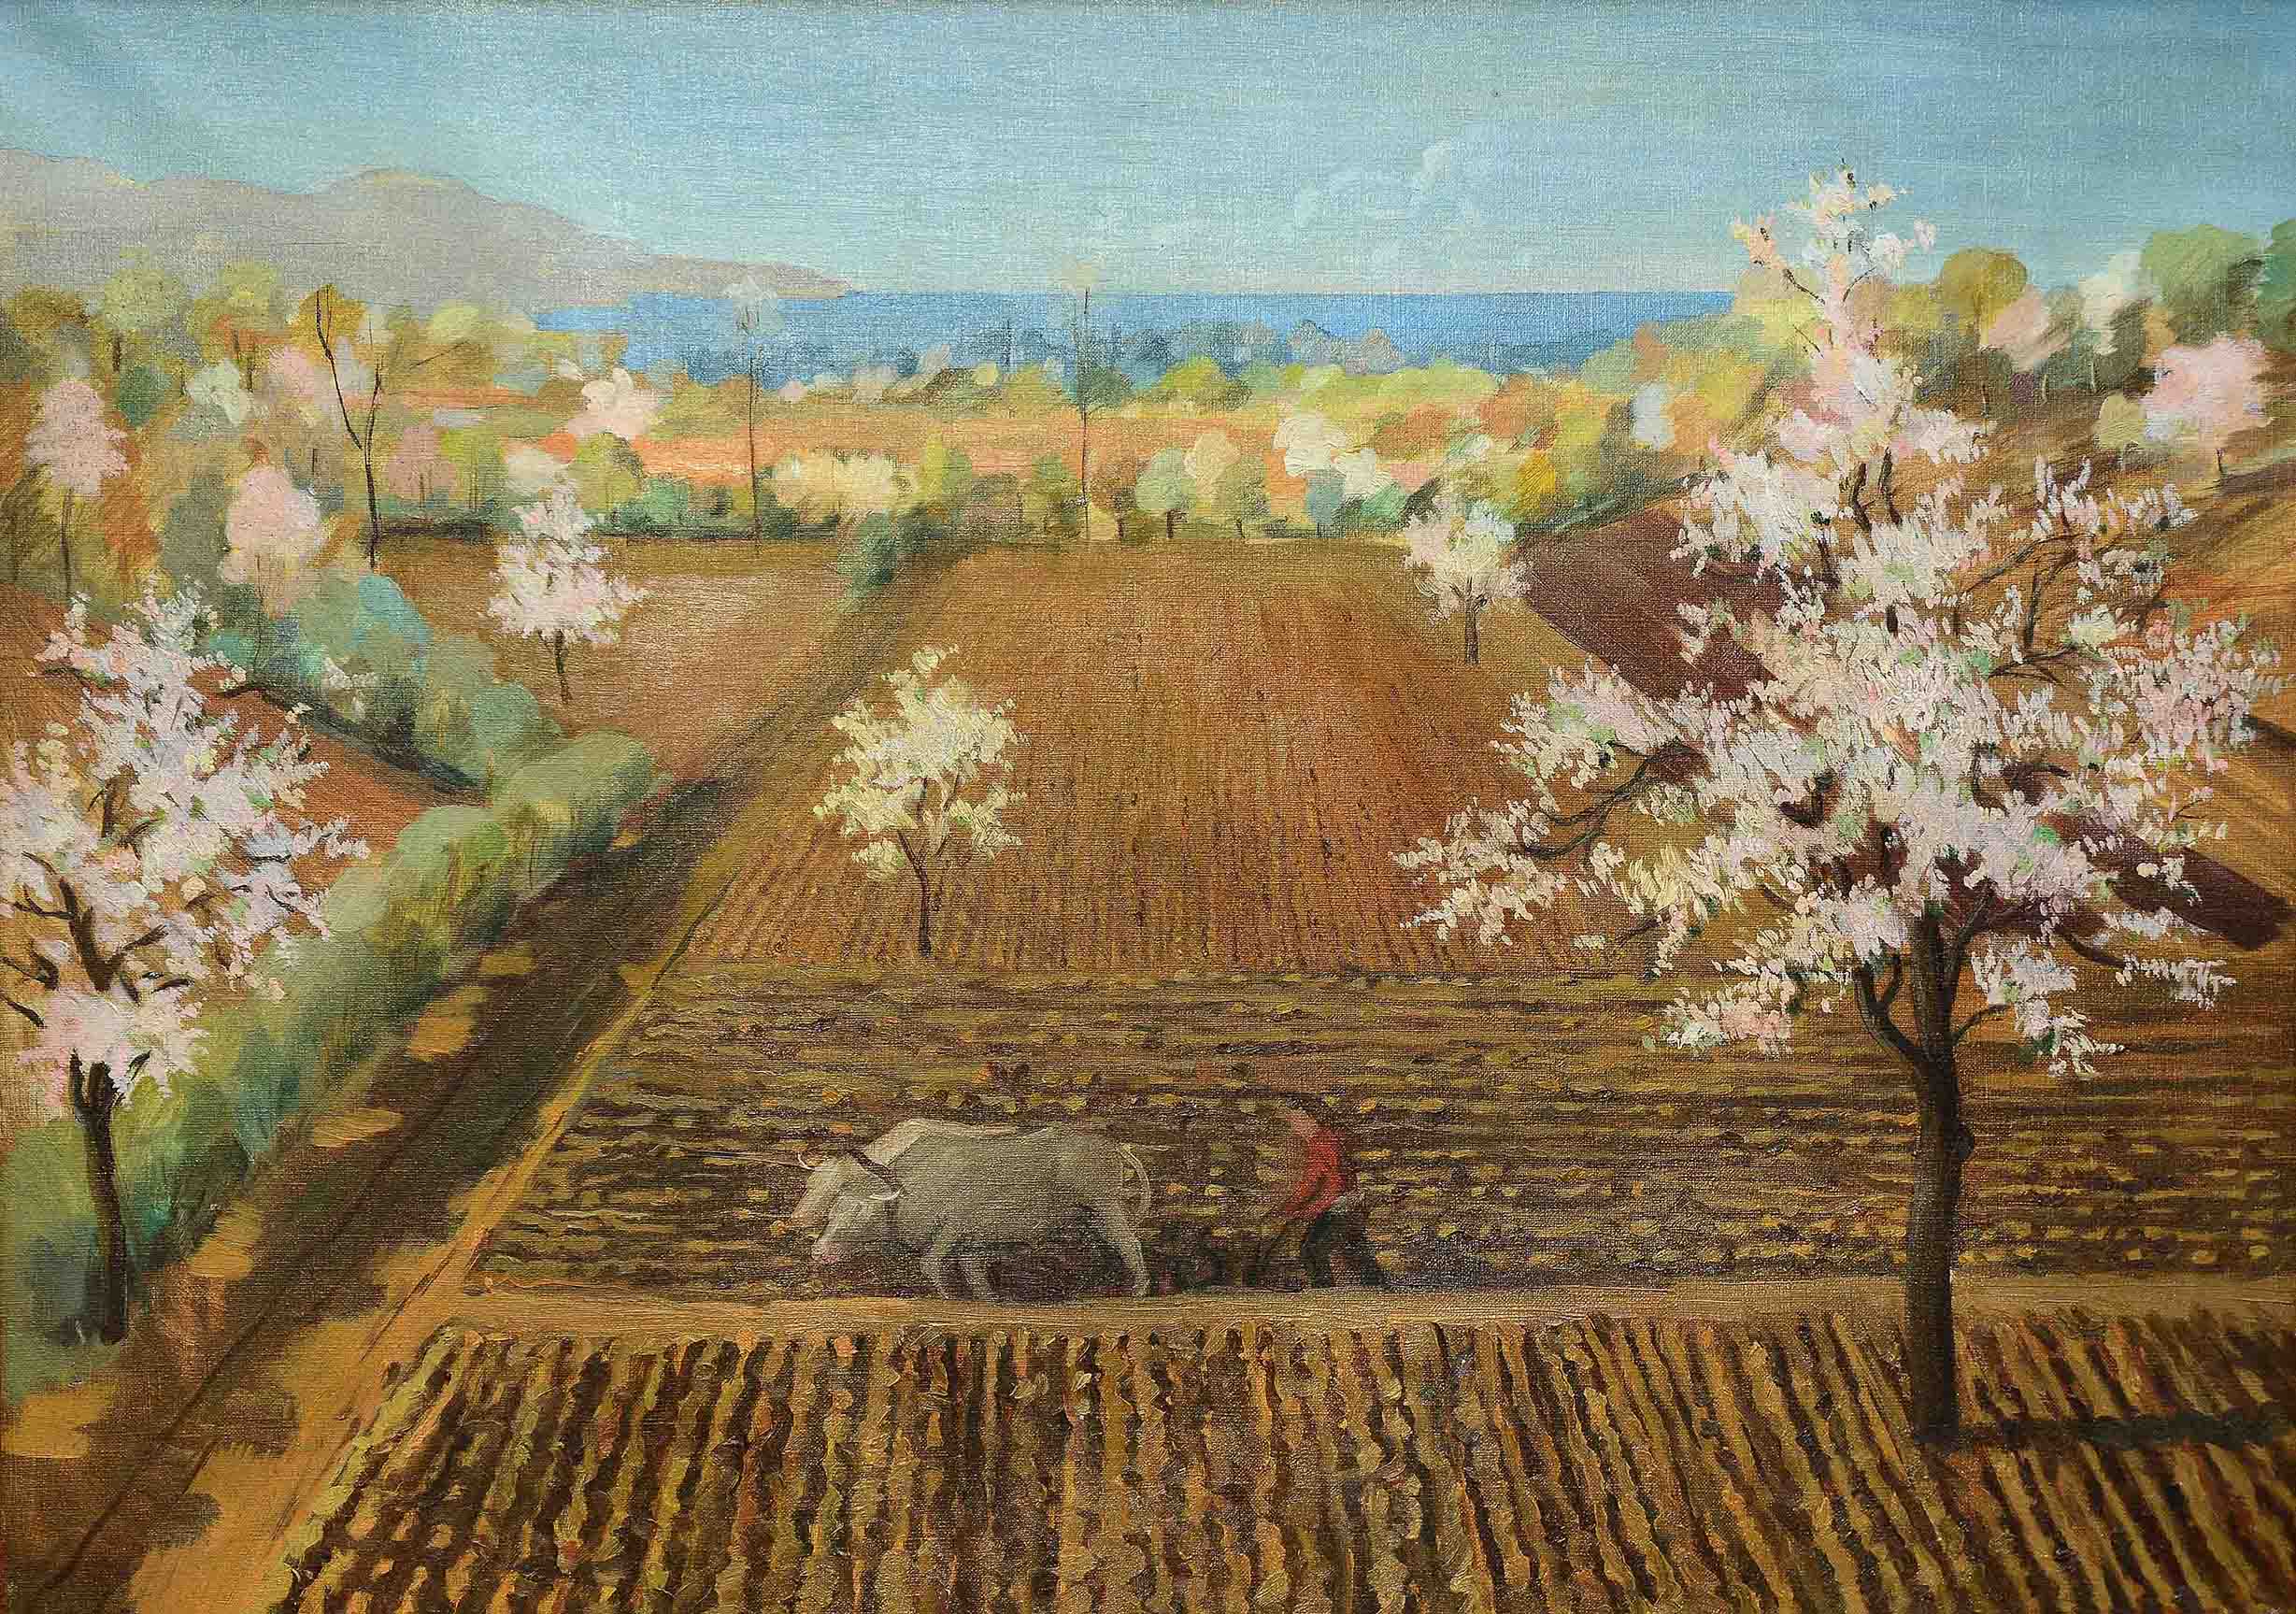 İsimsiz- Untitled, 1943, Tuval üzerine yağlıboya- Oil on canvas, 68,5×95,5 cm